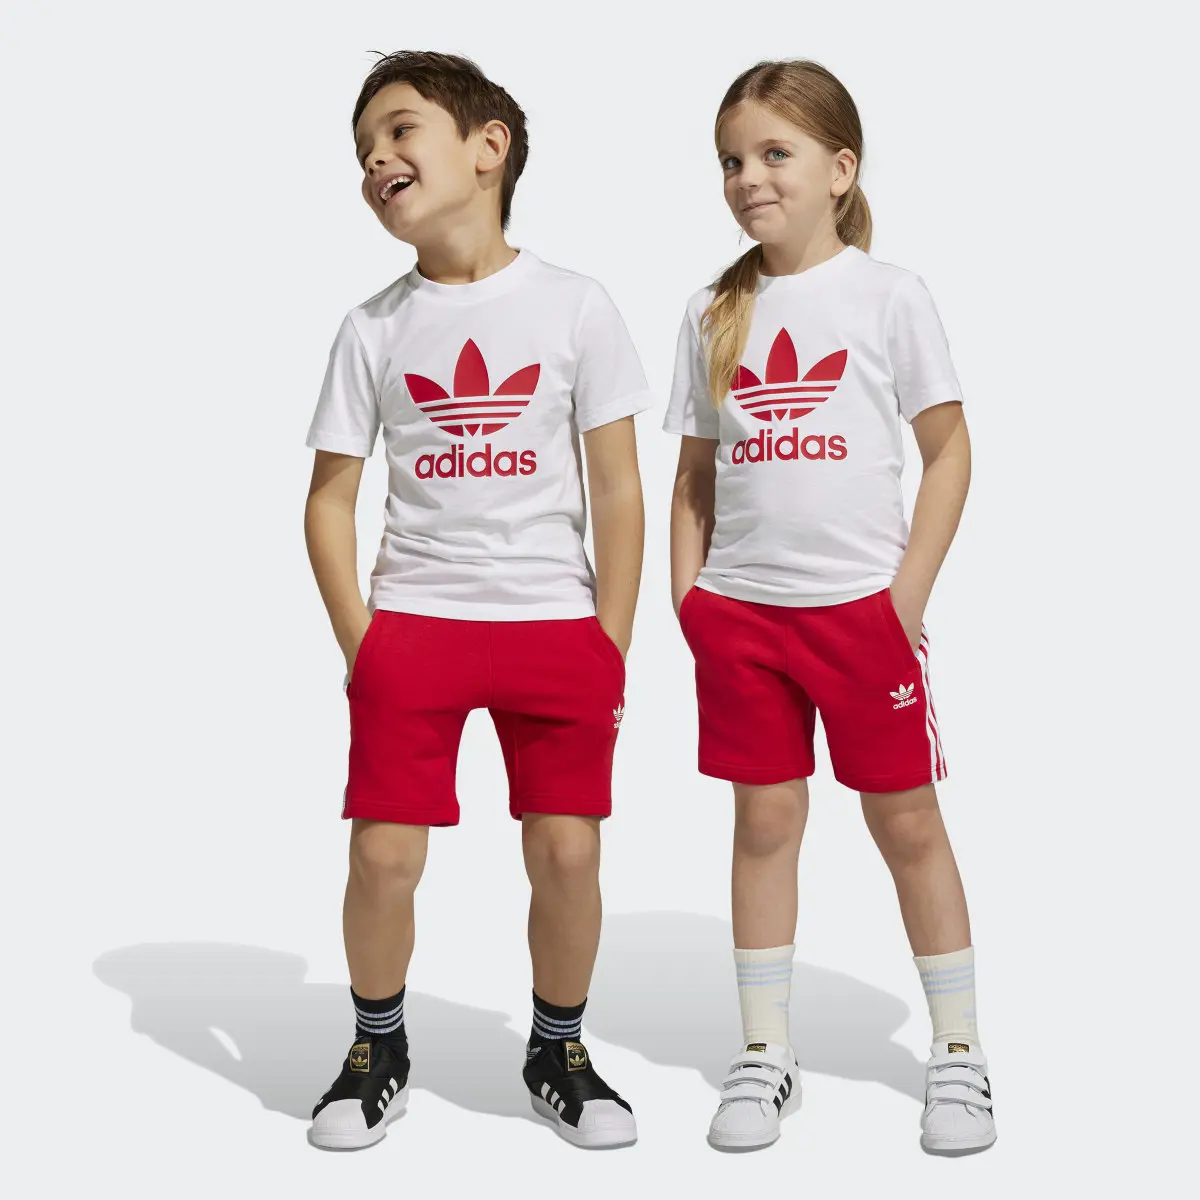 Adidas Adicolor Shorts and Tee Set. 1